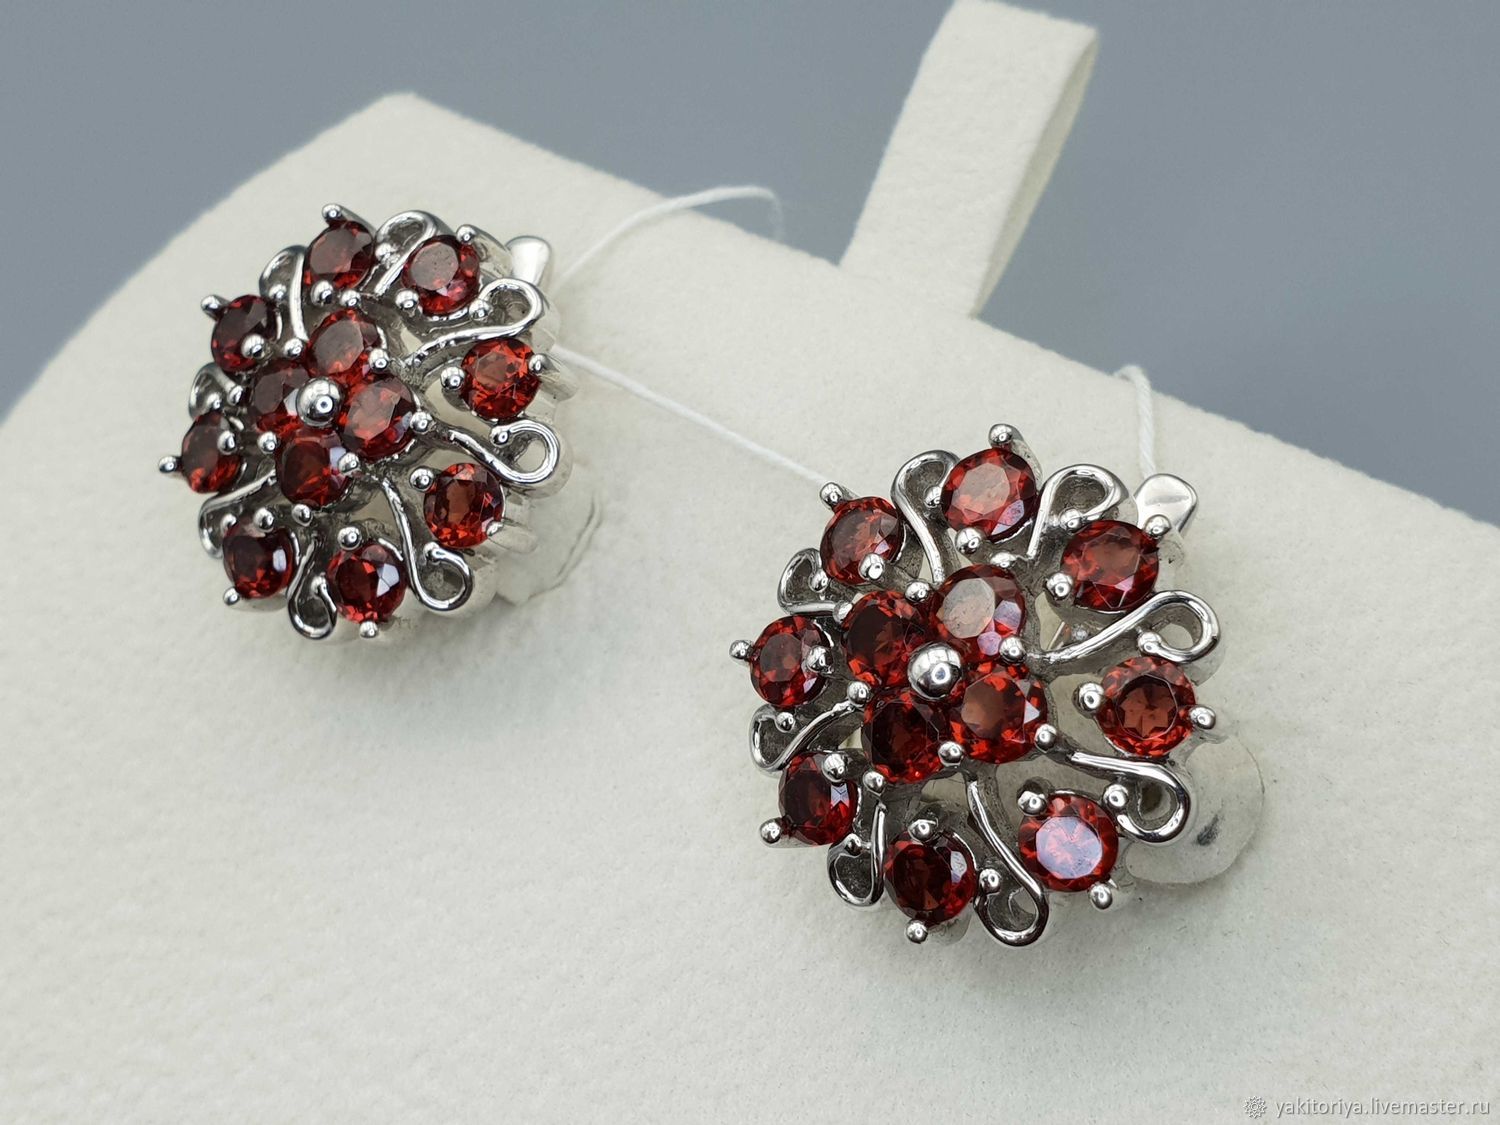 silver earrings with garnets, Earrings, Moscow,  Фото №1